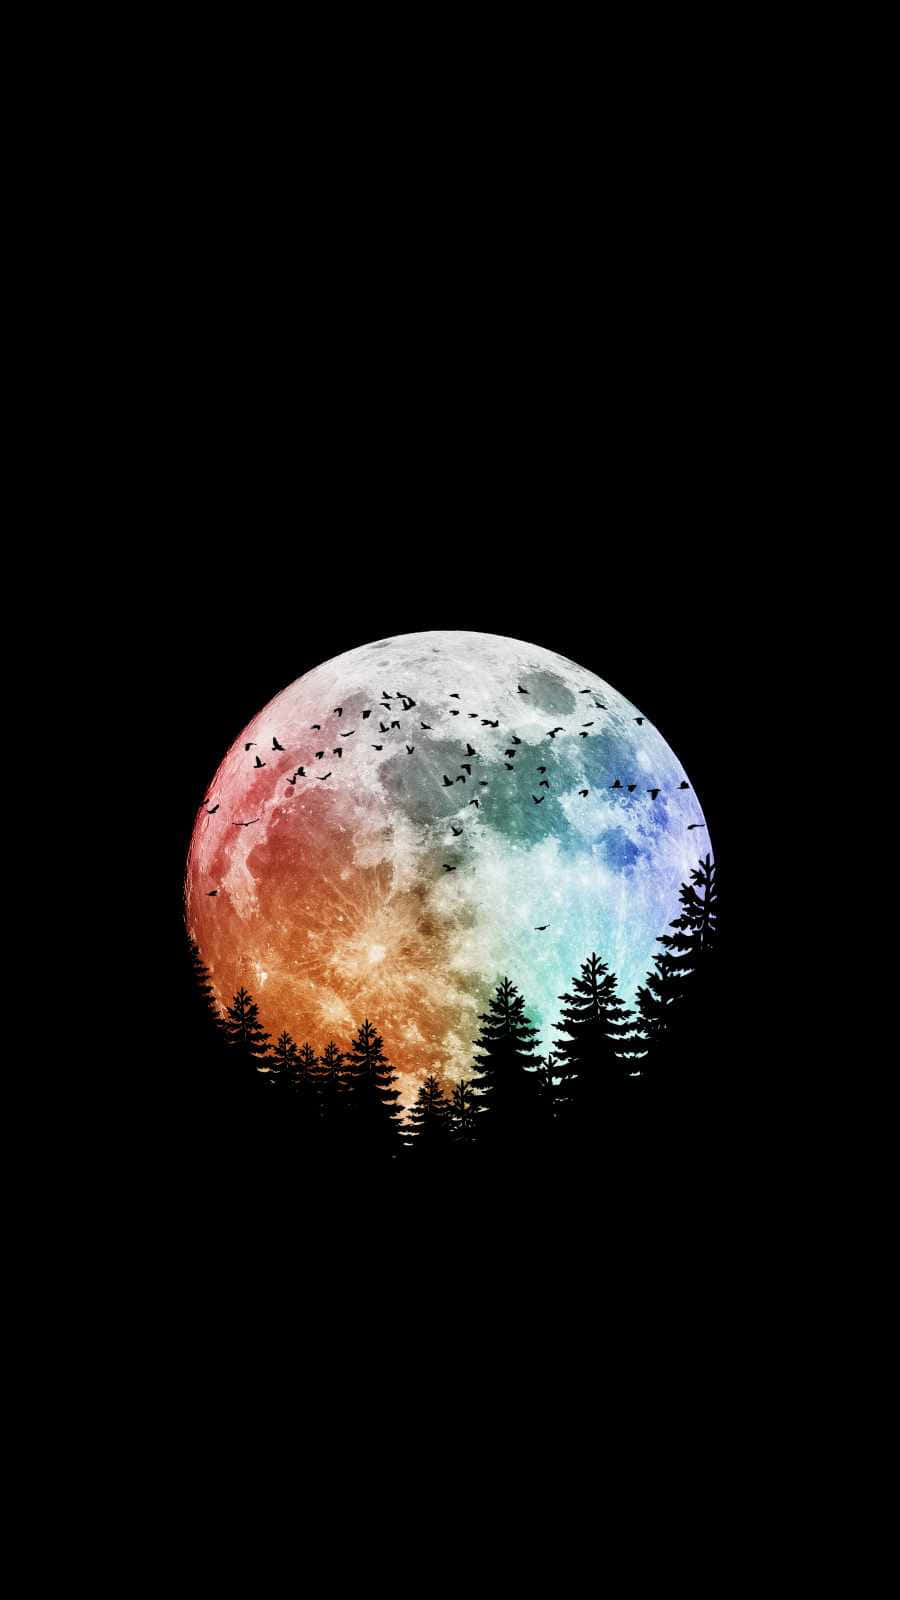 Nyd en månebesat aften med din iPhone. Wallpaper